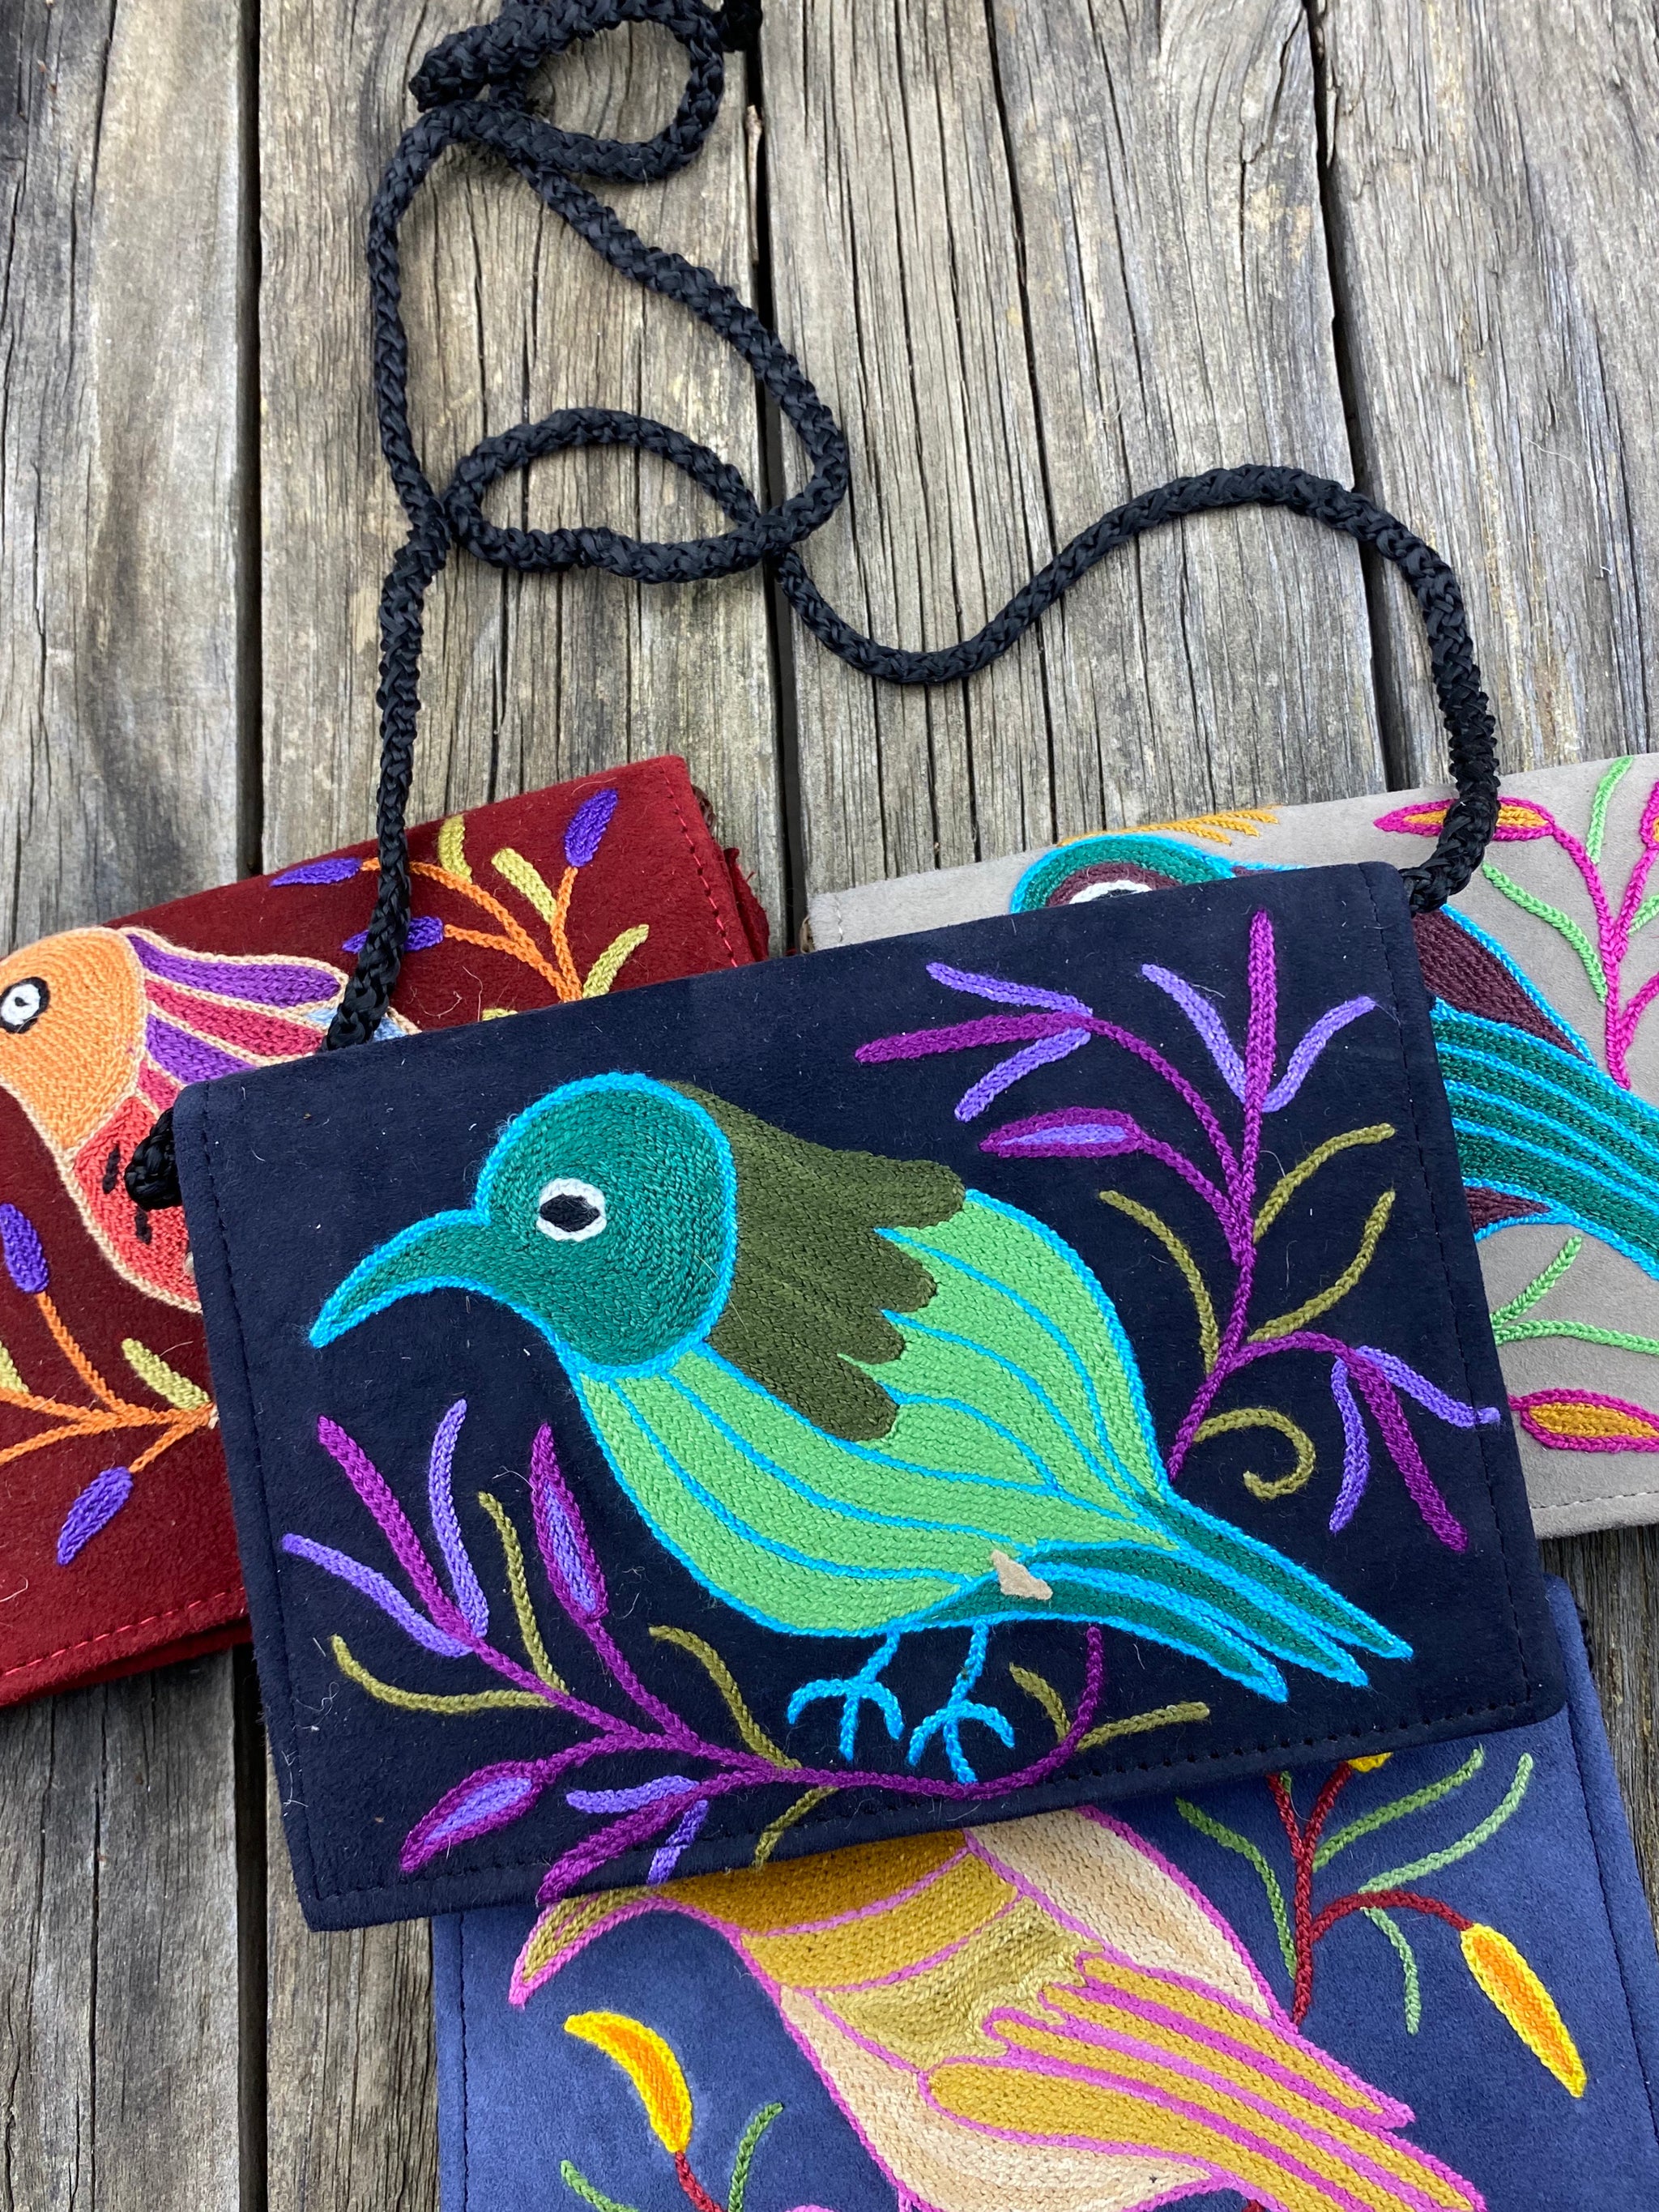 Fair Trade Ethical Embroidered Suede Handbag One Bird Design - Assorted